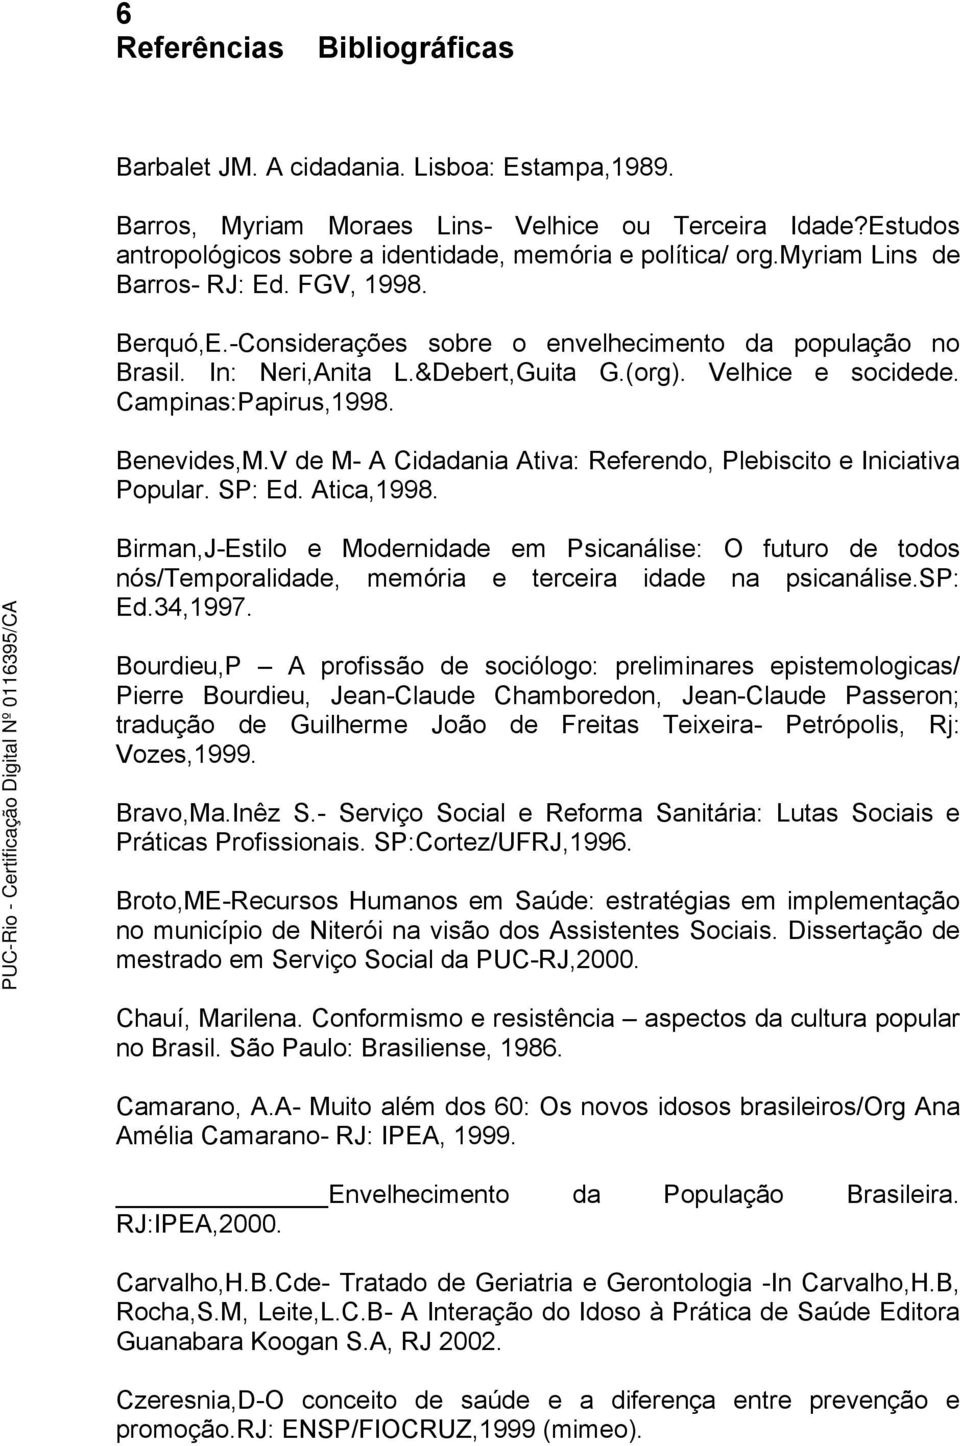 Benevides,M.V de M- A Cidadania Ativa: Referendo, Plebiscito e Iniciativa Popular. SP: Ed. Atica,1998.